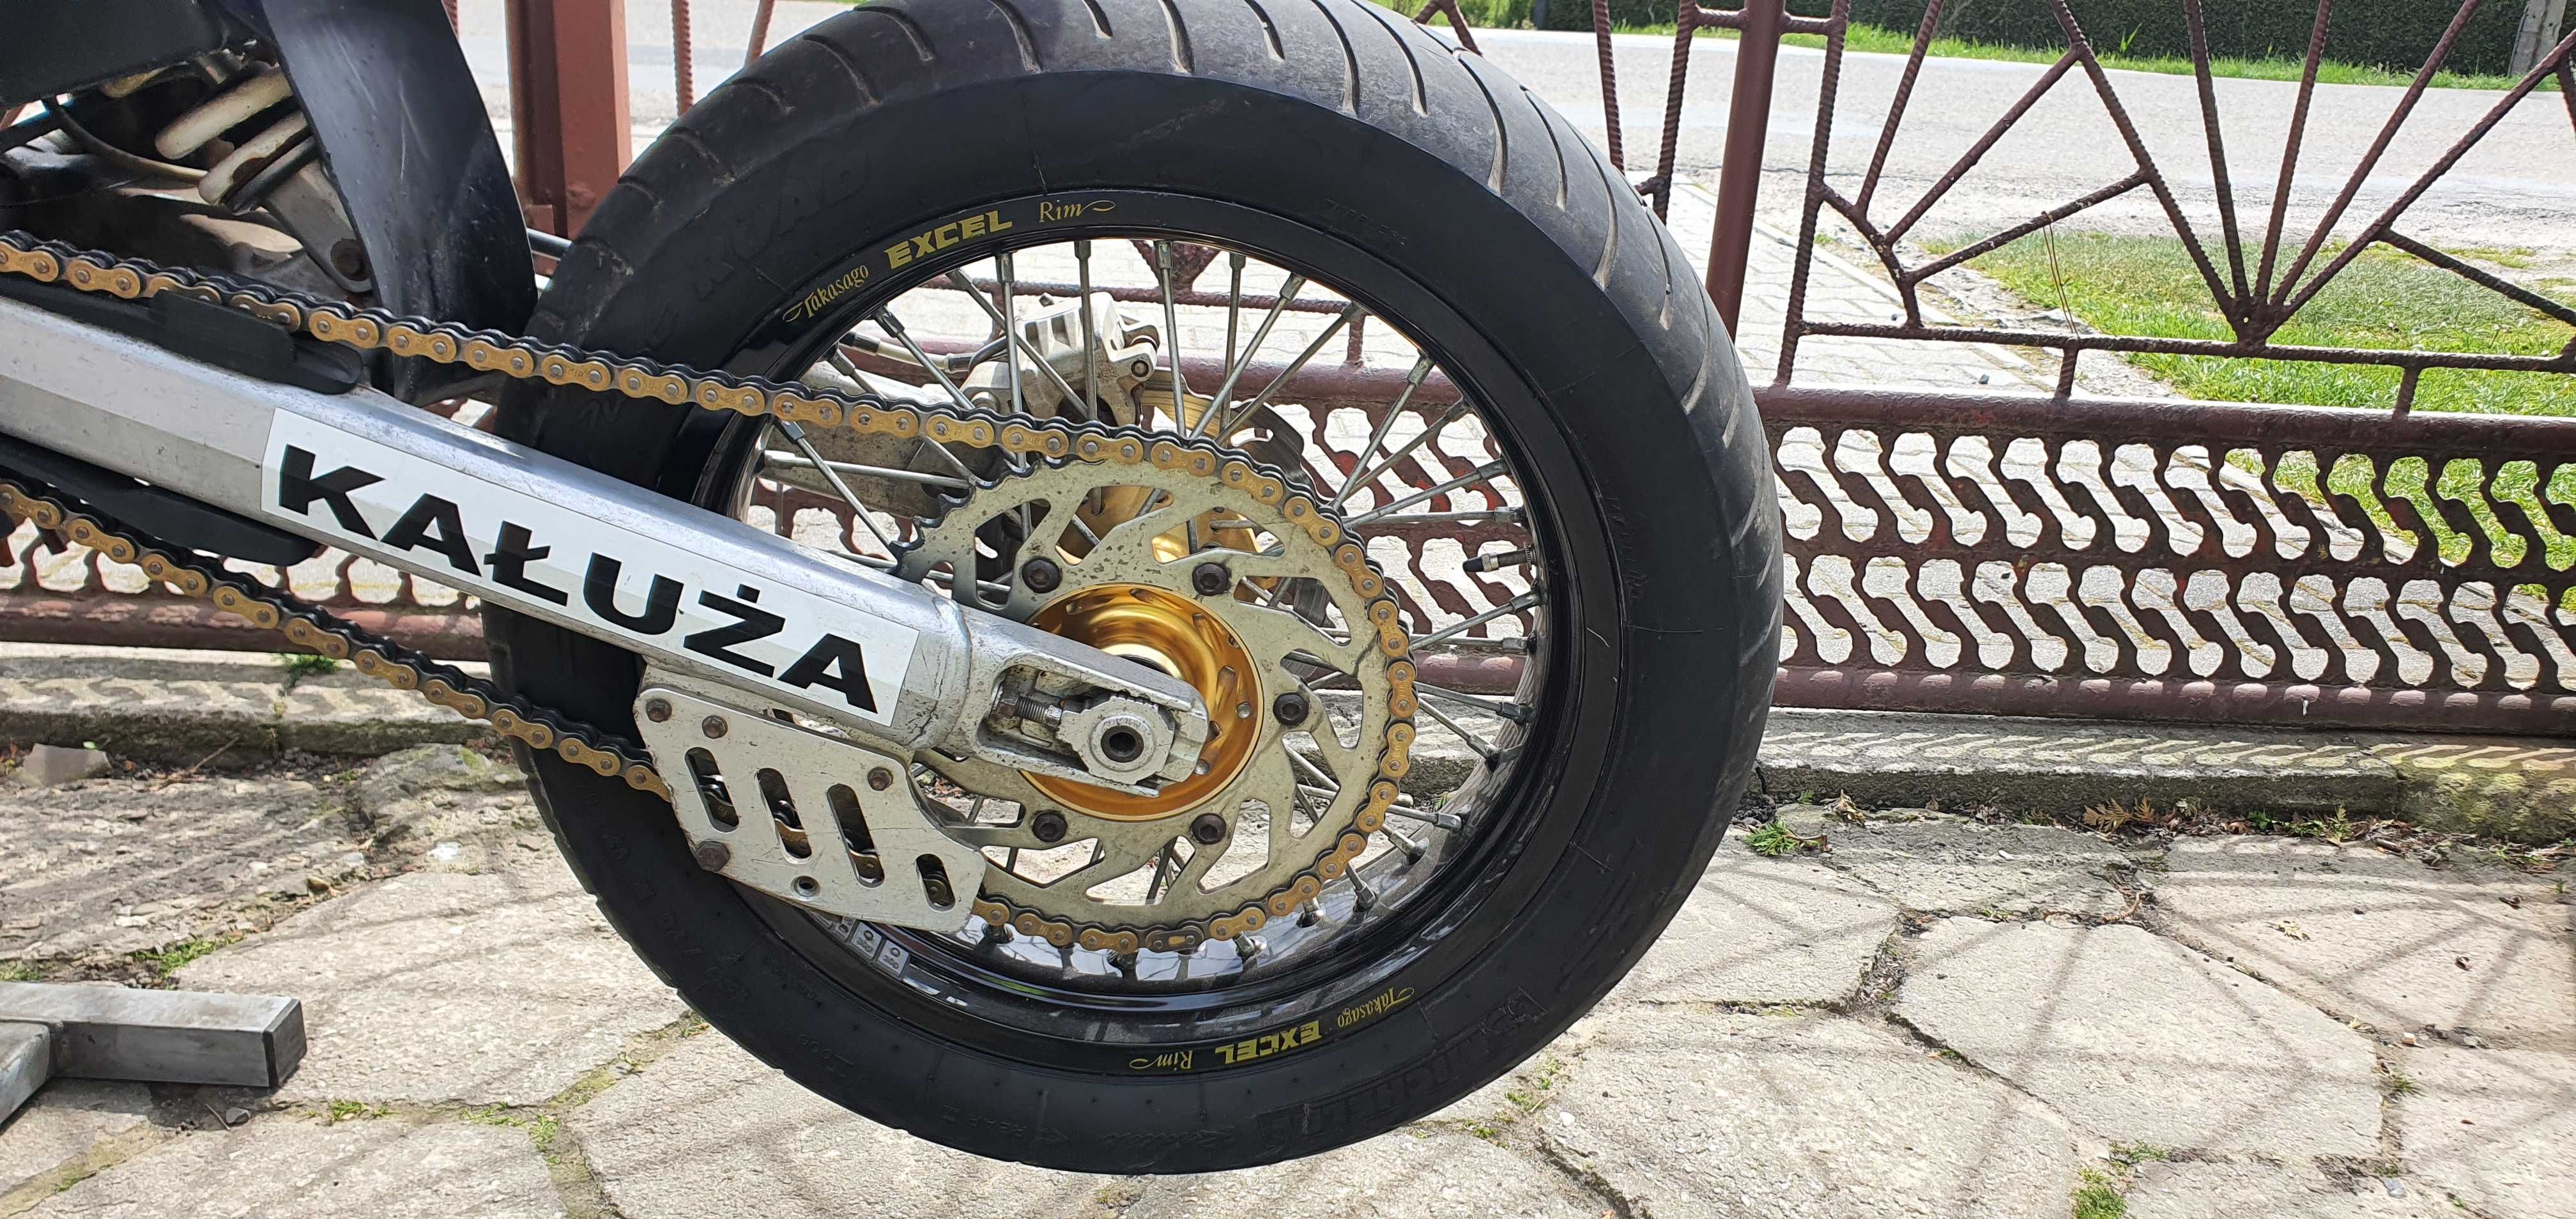 KTM 450 EXC Supermoto, Kałuża Motocykle, zamiana.